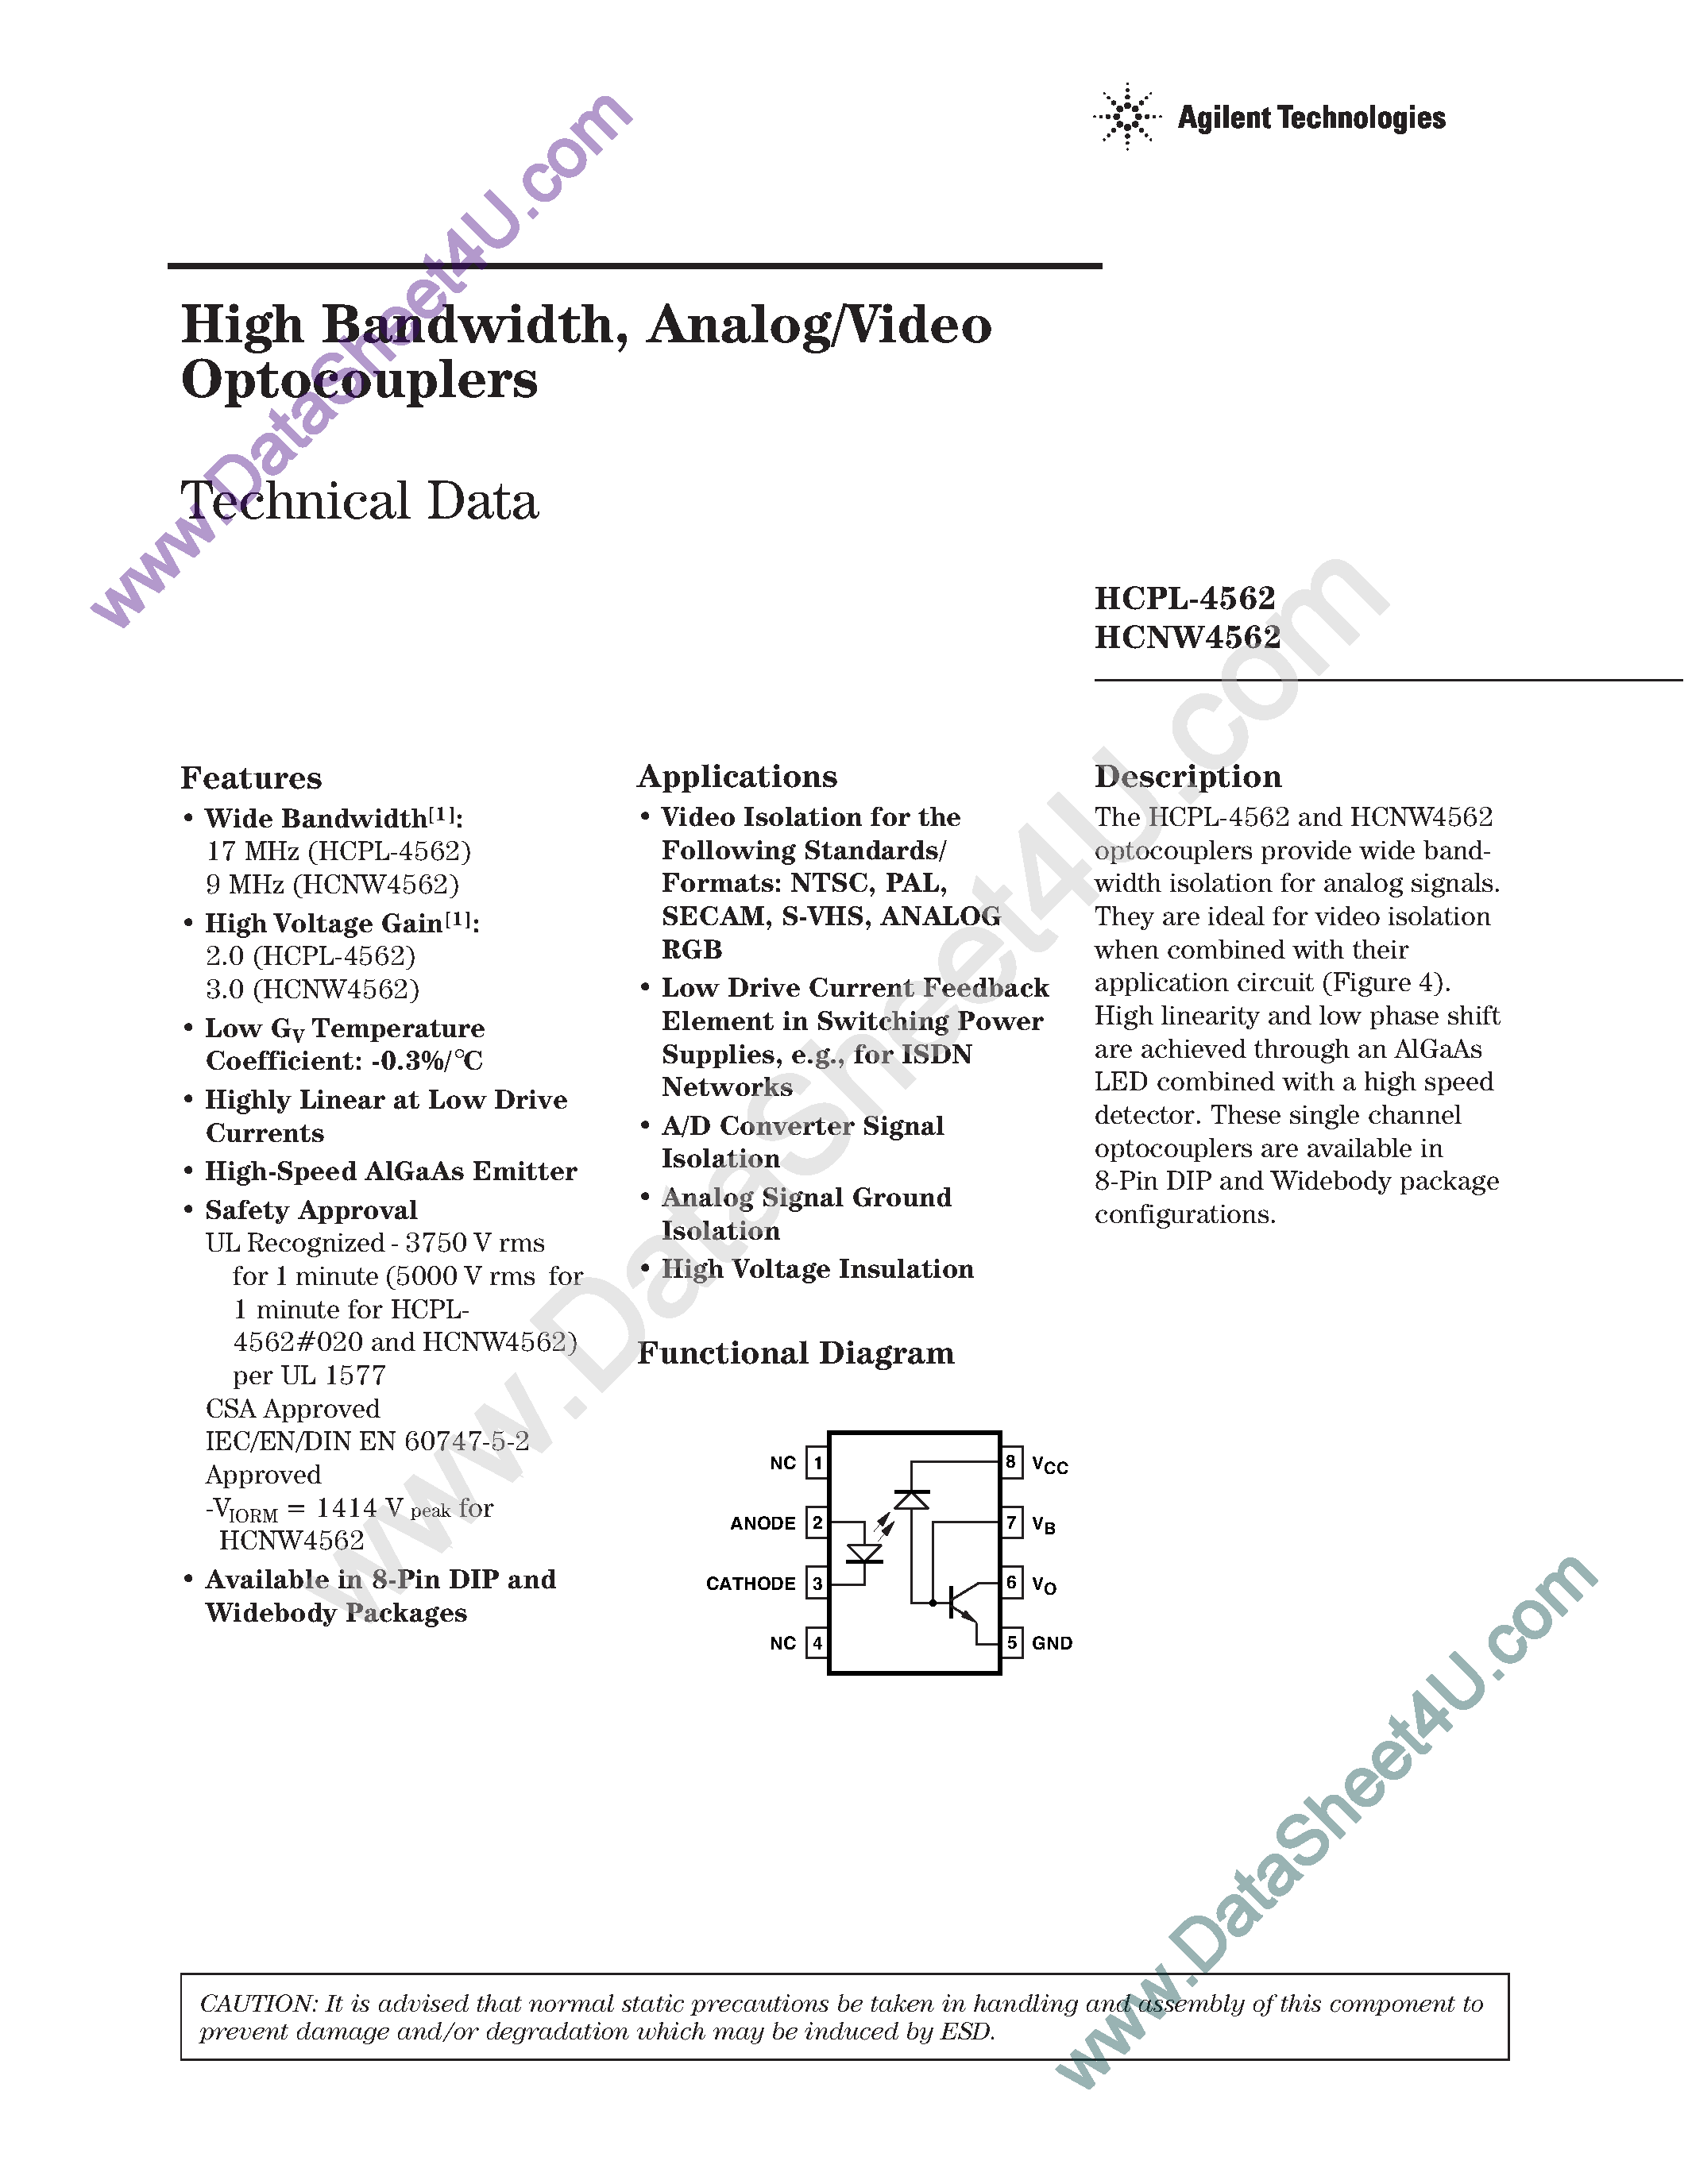 Даташит HCPL-4562 - High Bandwidth Analog/Video Optocouplers страница 1